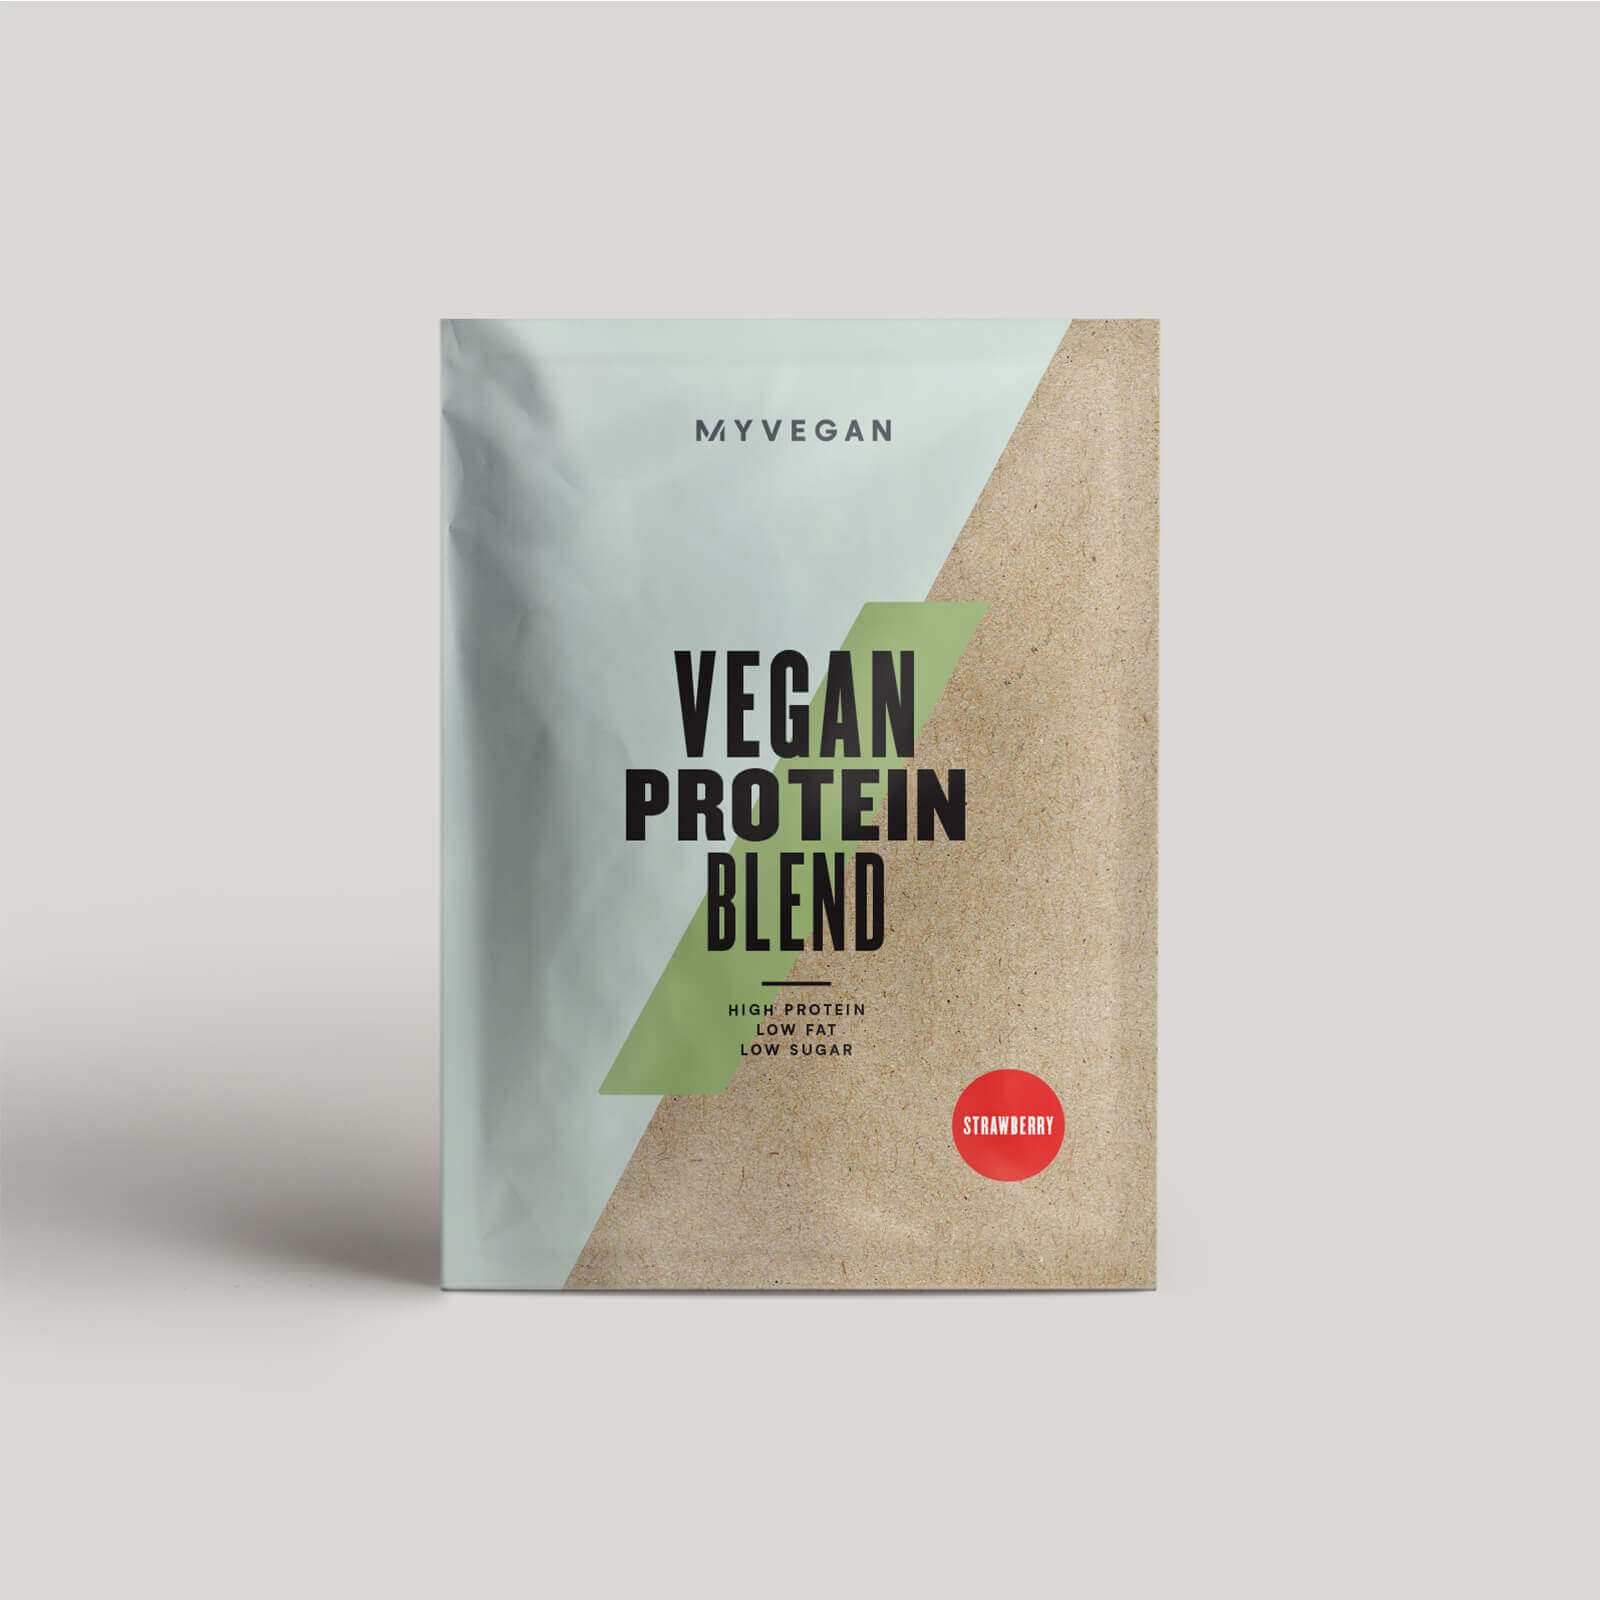 Myvegan Vegan Protein Blend (Sample) - 30g - Fragola